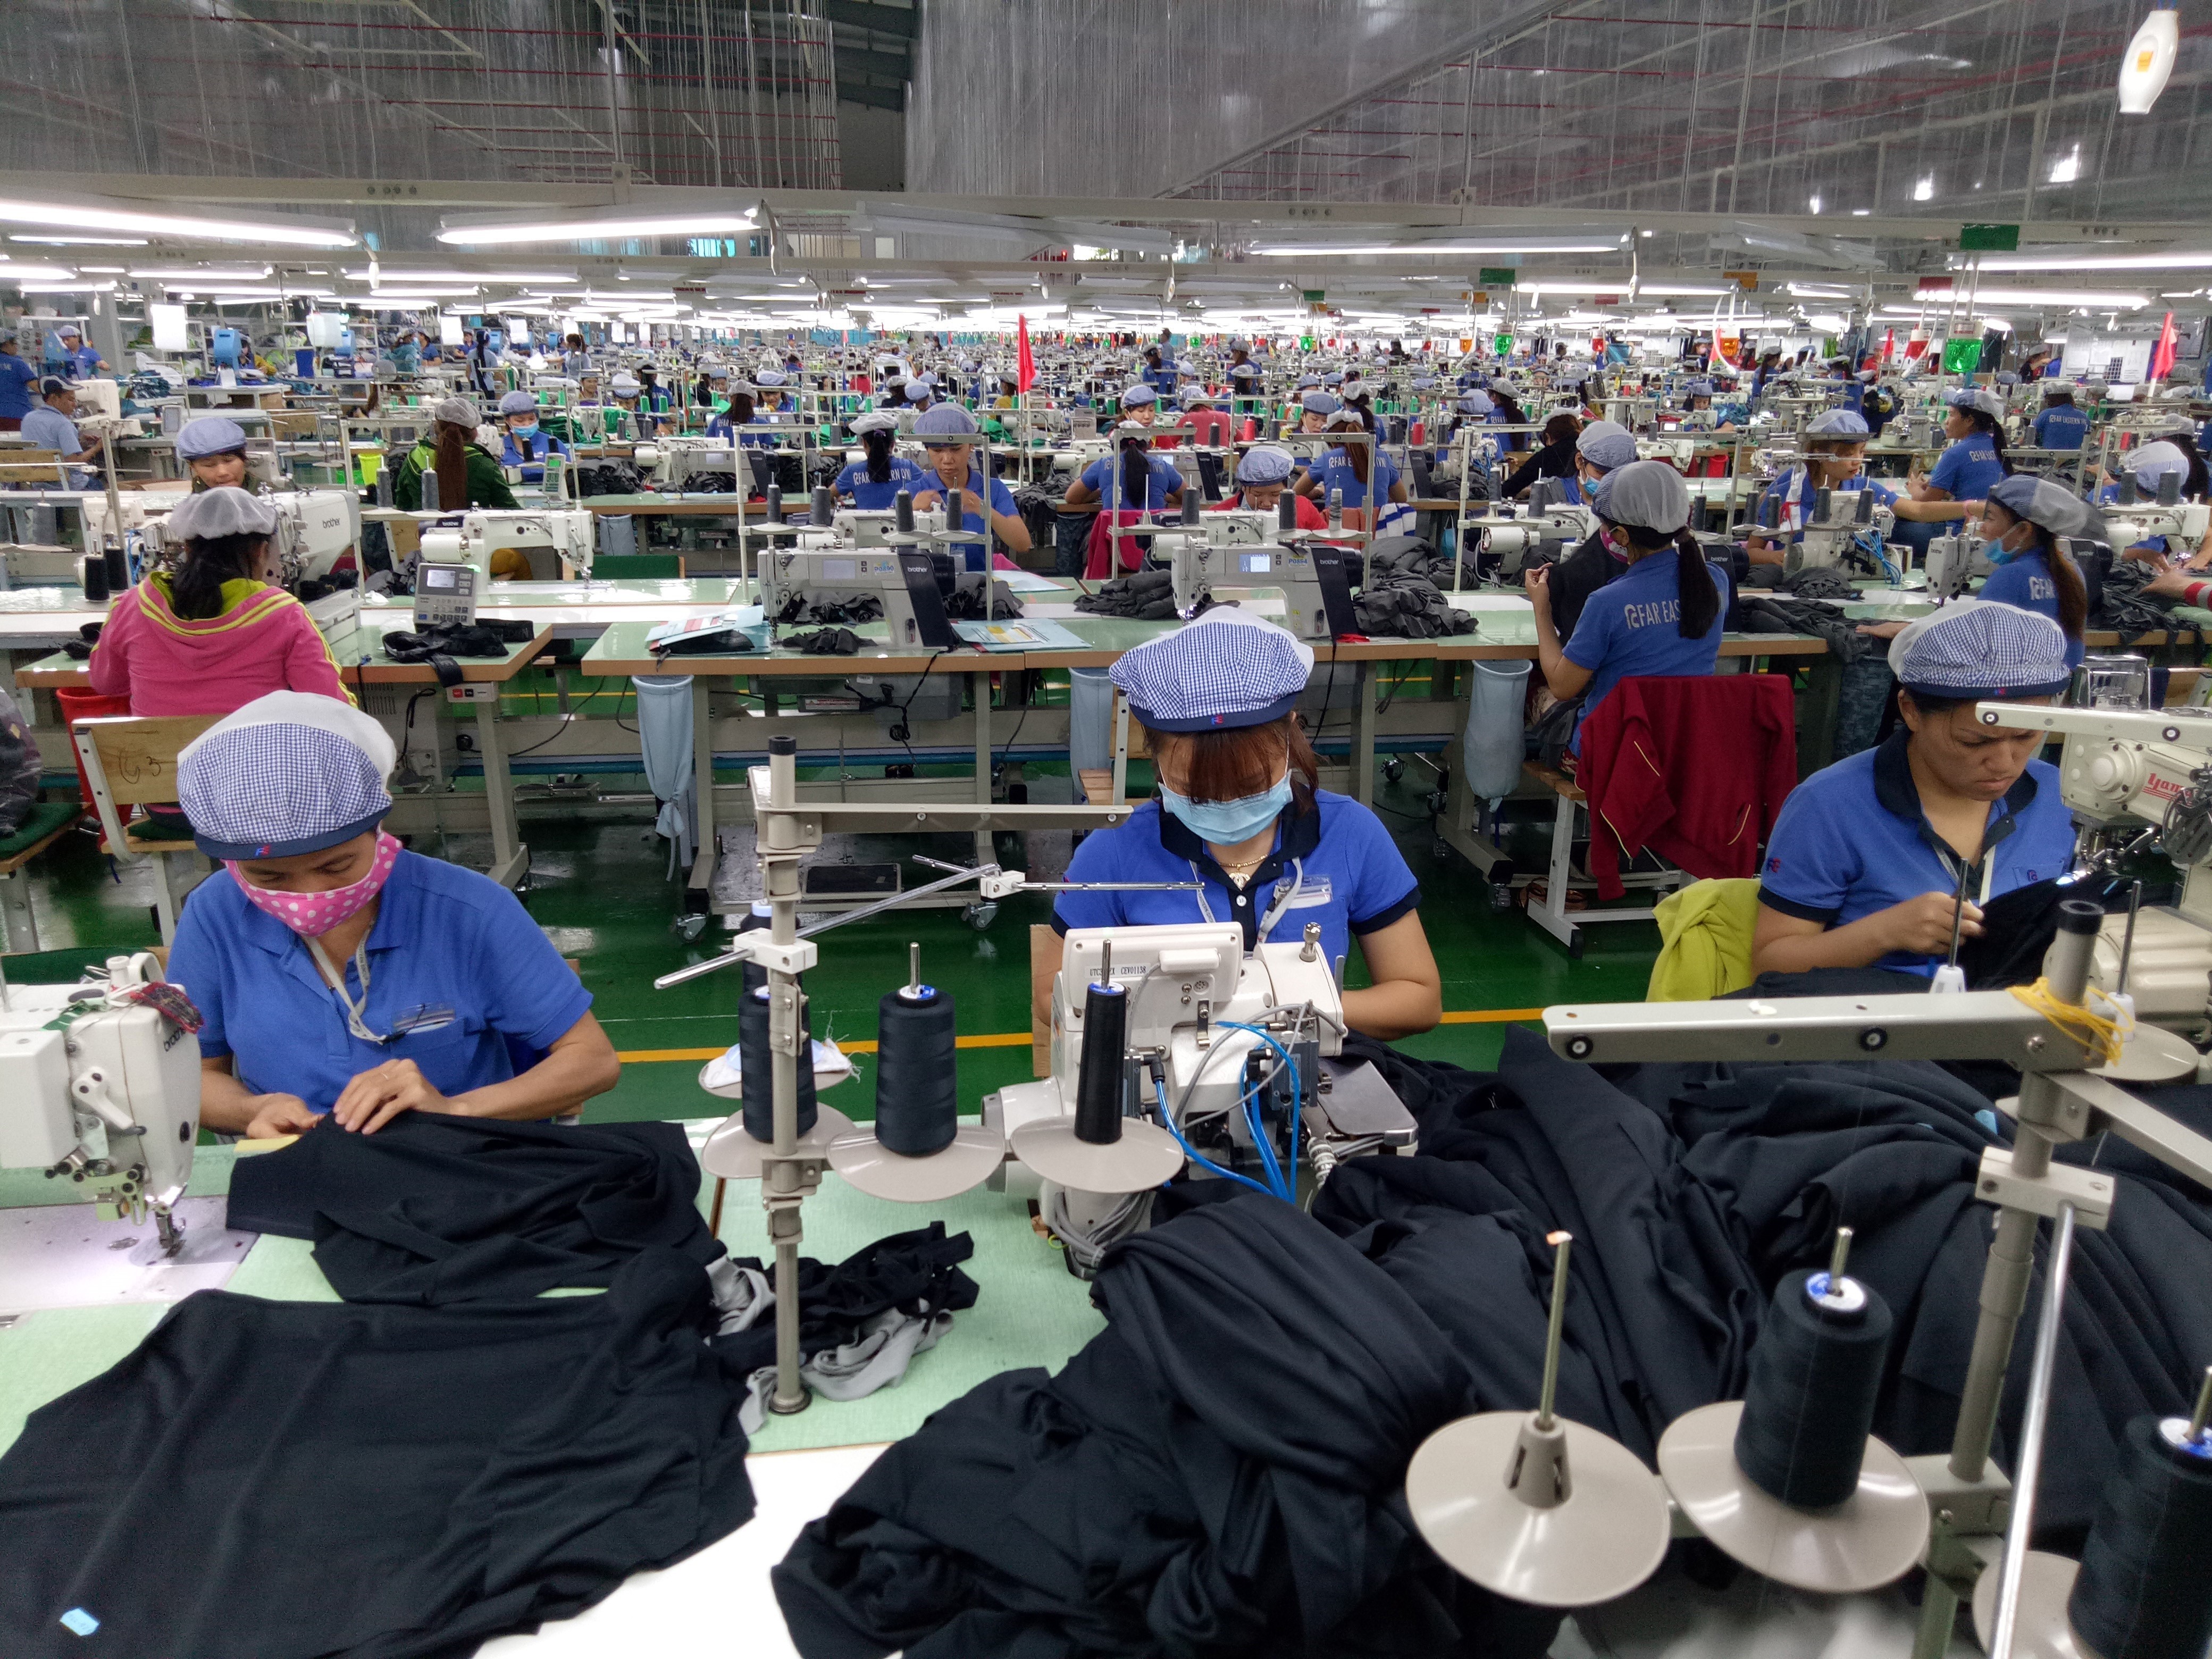 L’UE exemptera de taxes d’importation pendant 7 ans certains produits vietnamiens, tels que textile et chaussures.